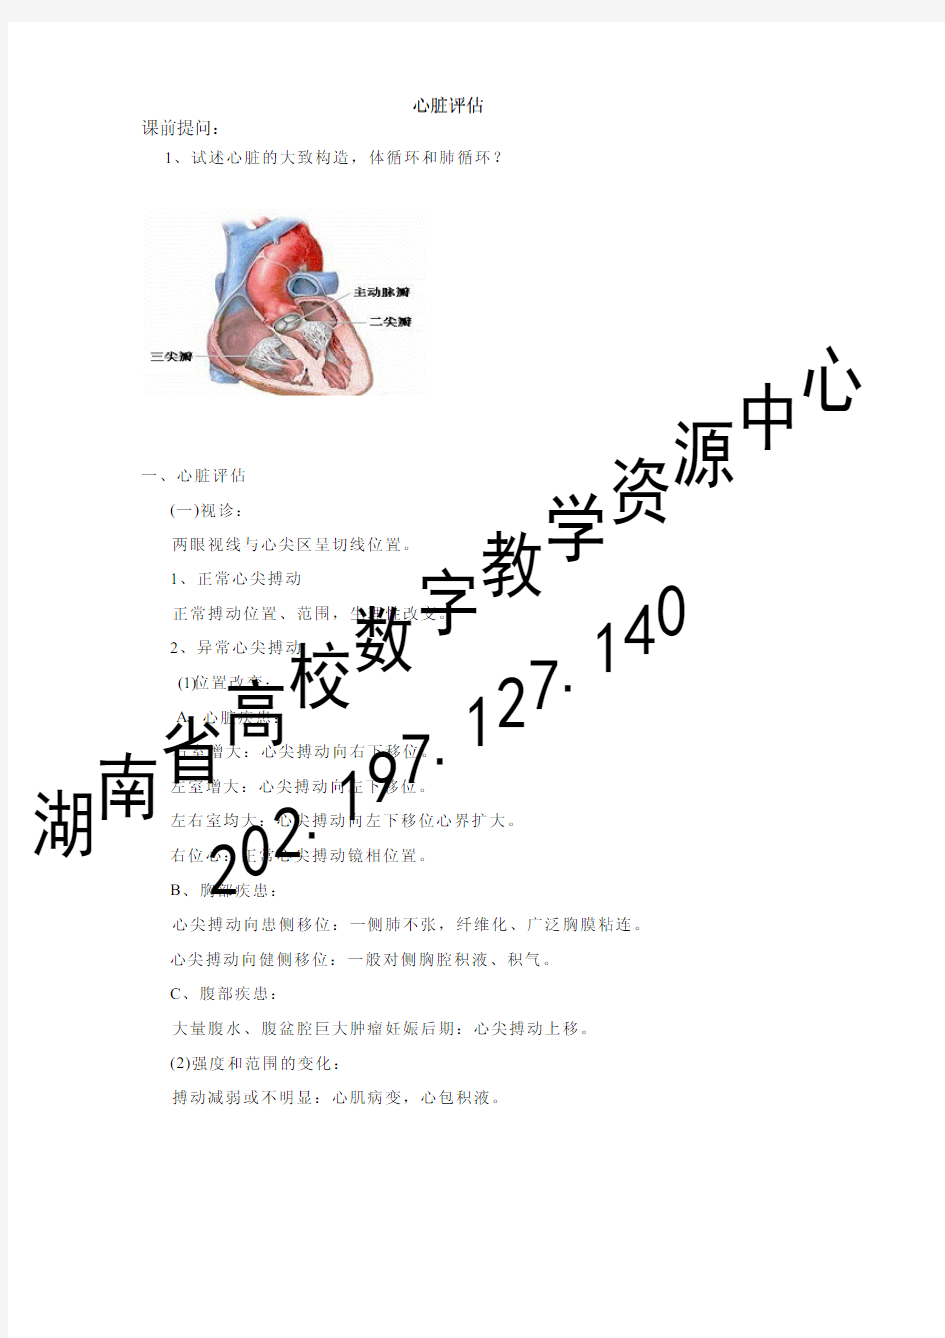 健康评估_课程教案_13.14.心脏和血管评估.pdf